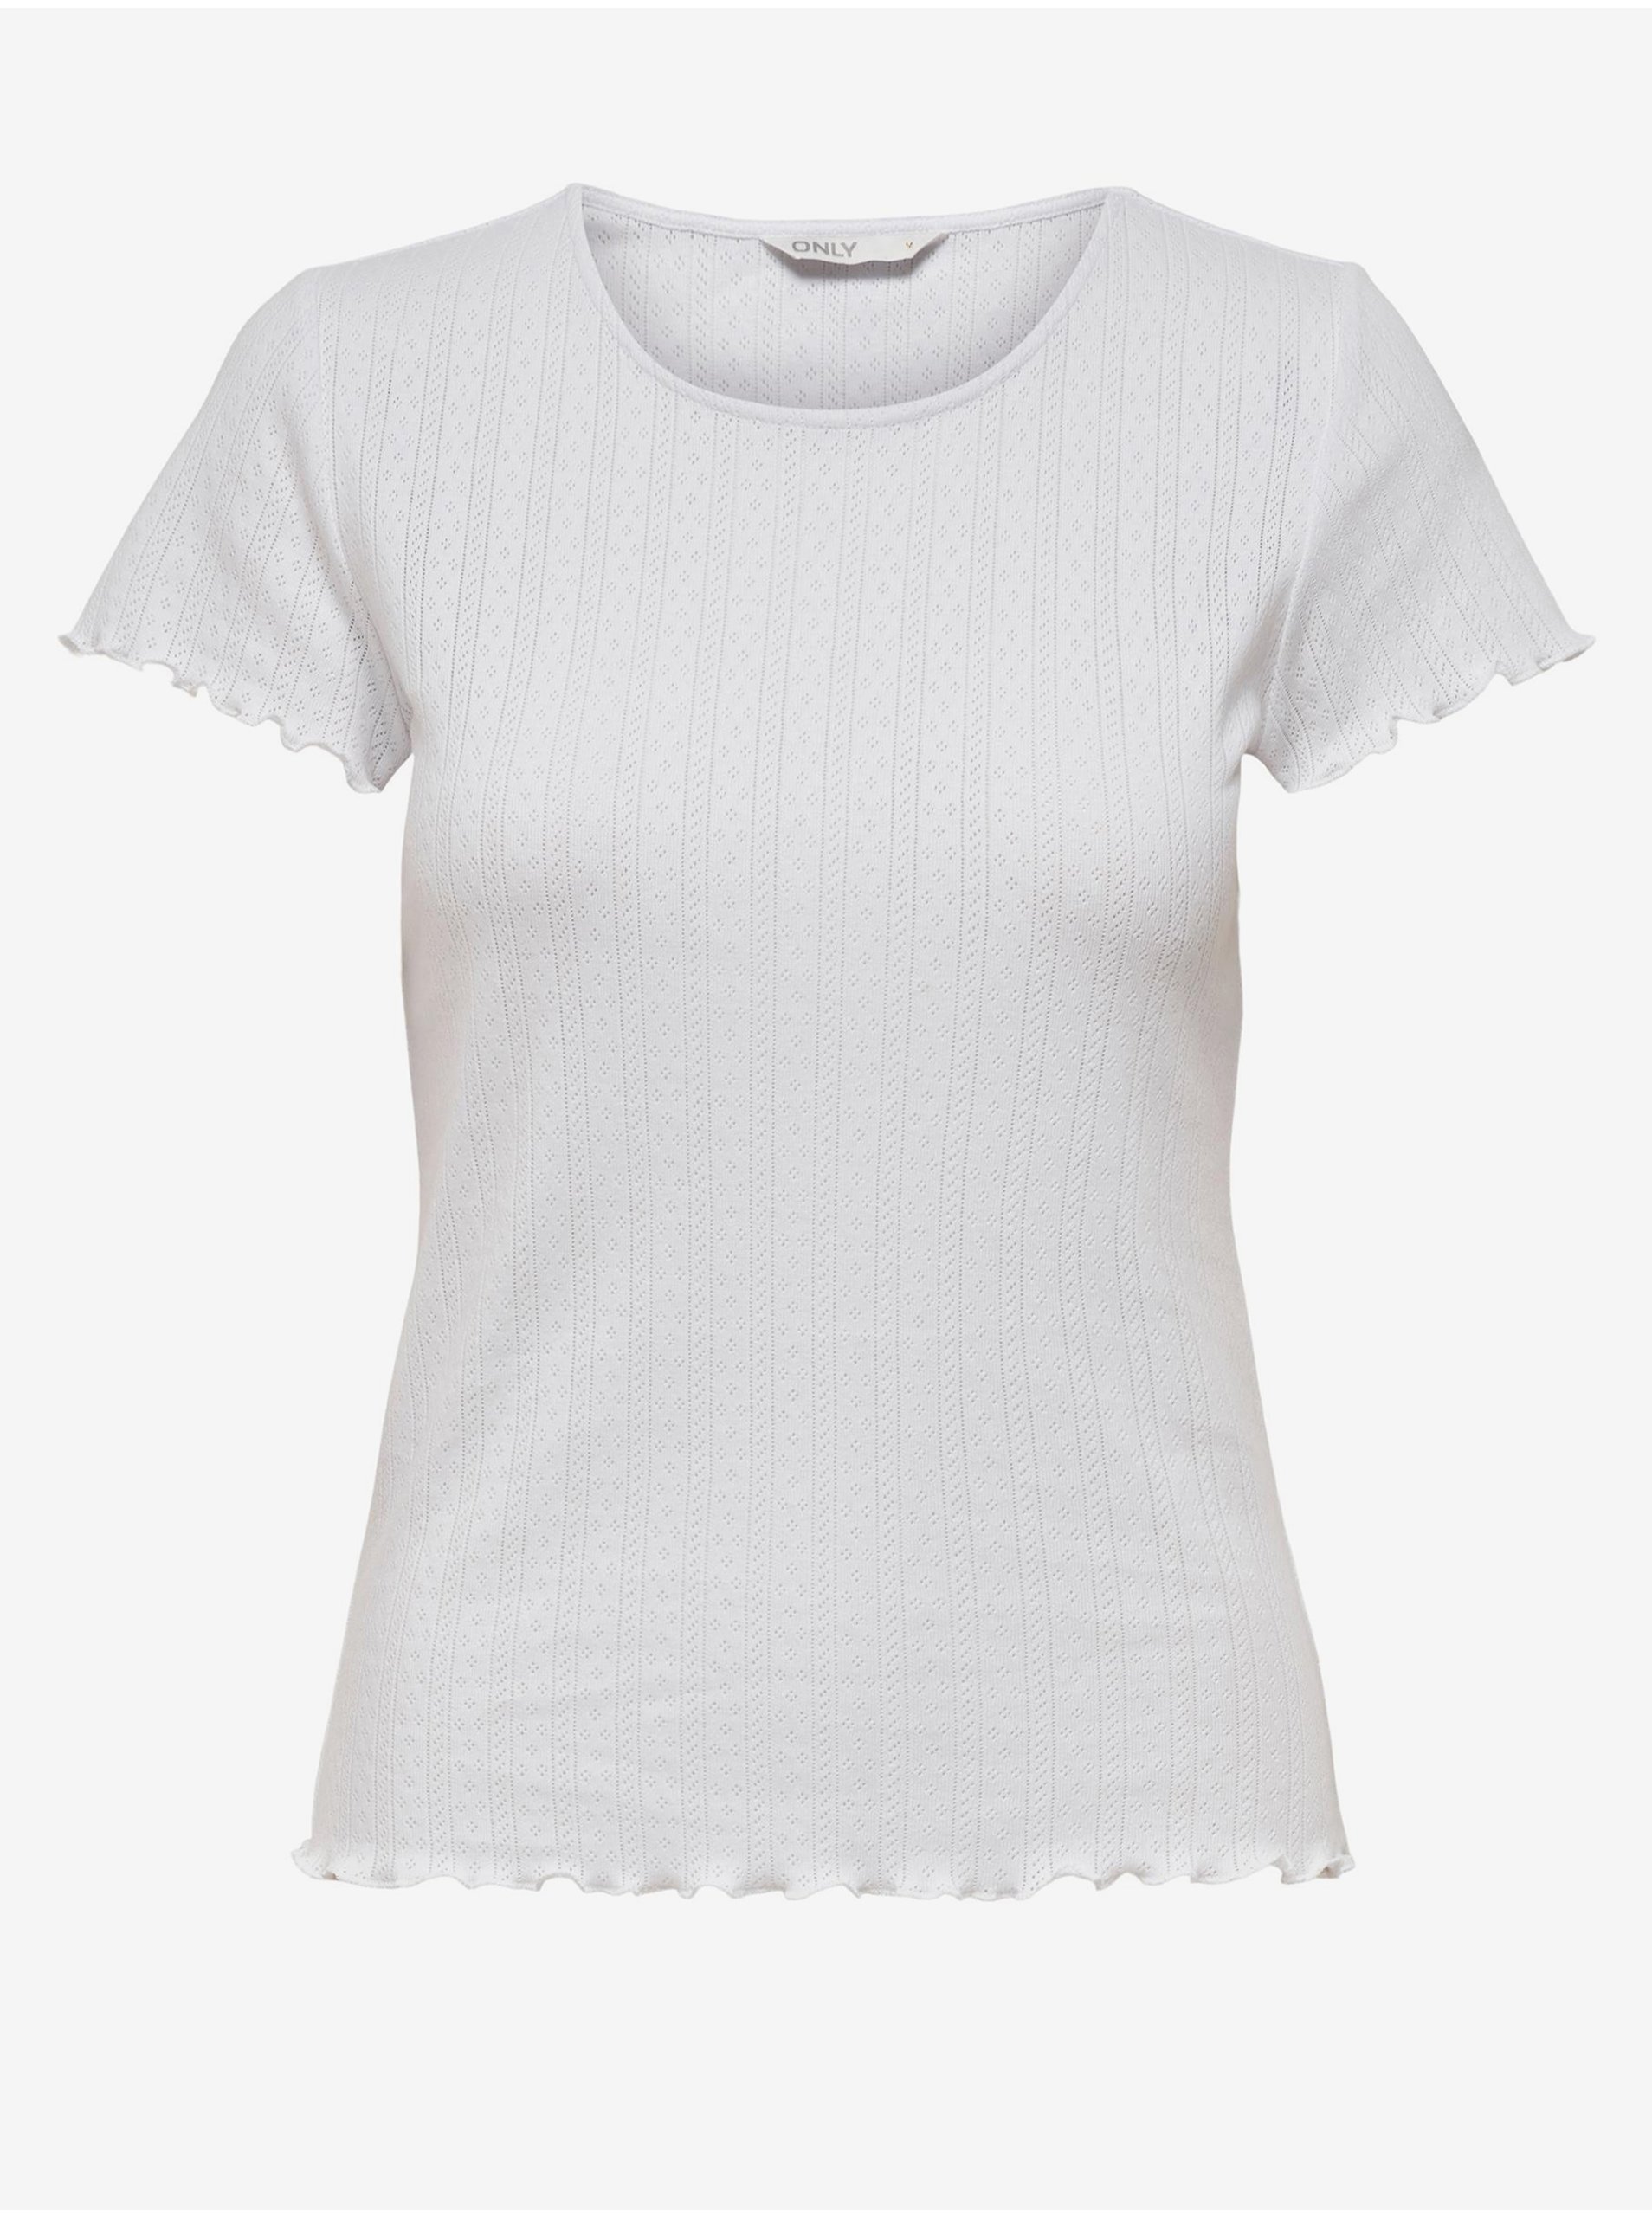 White women's ribbed T-shirt ONLY Carlotta - Women